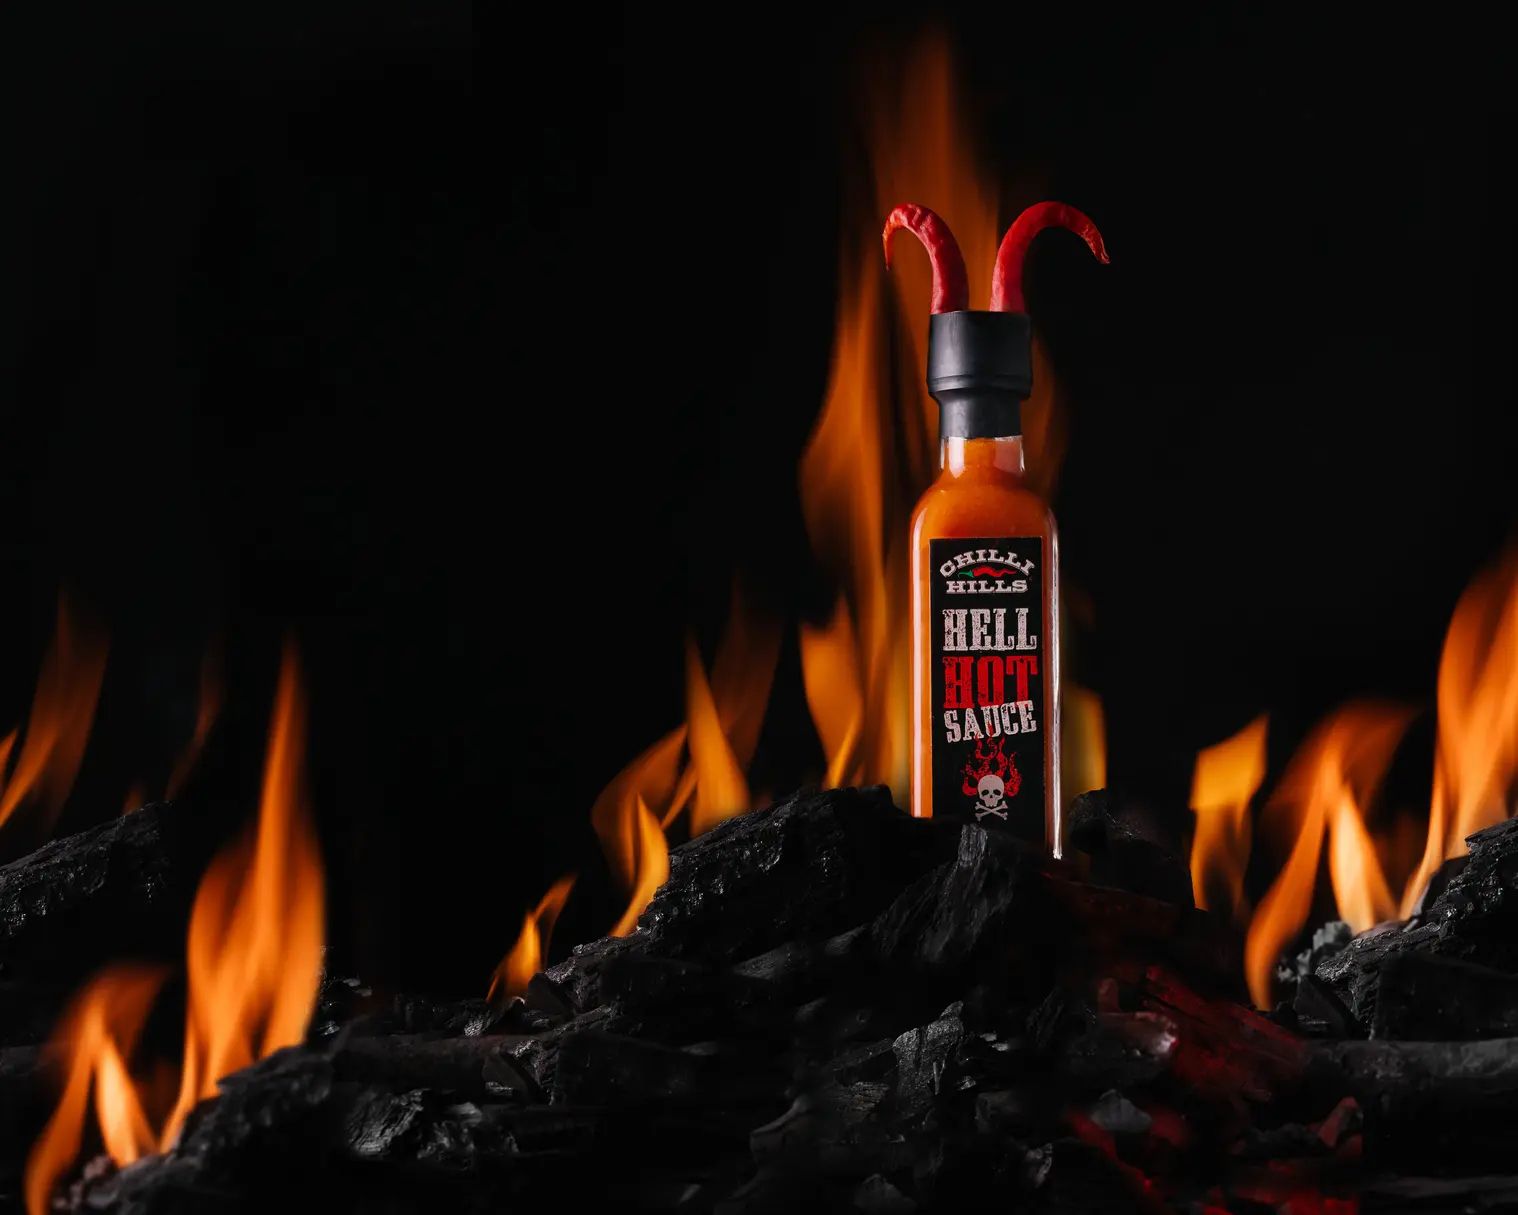 Chilli Hills Hell Hot Sauce върху горещи въглени. Буркан с горещ сос Chilli Hills Hell Hot Sauce стои върху горящи въглища. Зад нея гори огън. В буркана има рогца от люти чушки, които трябва да подскажат на зрителя – сосът е дяволски опасен.